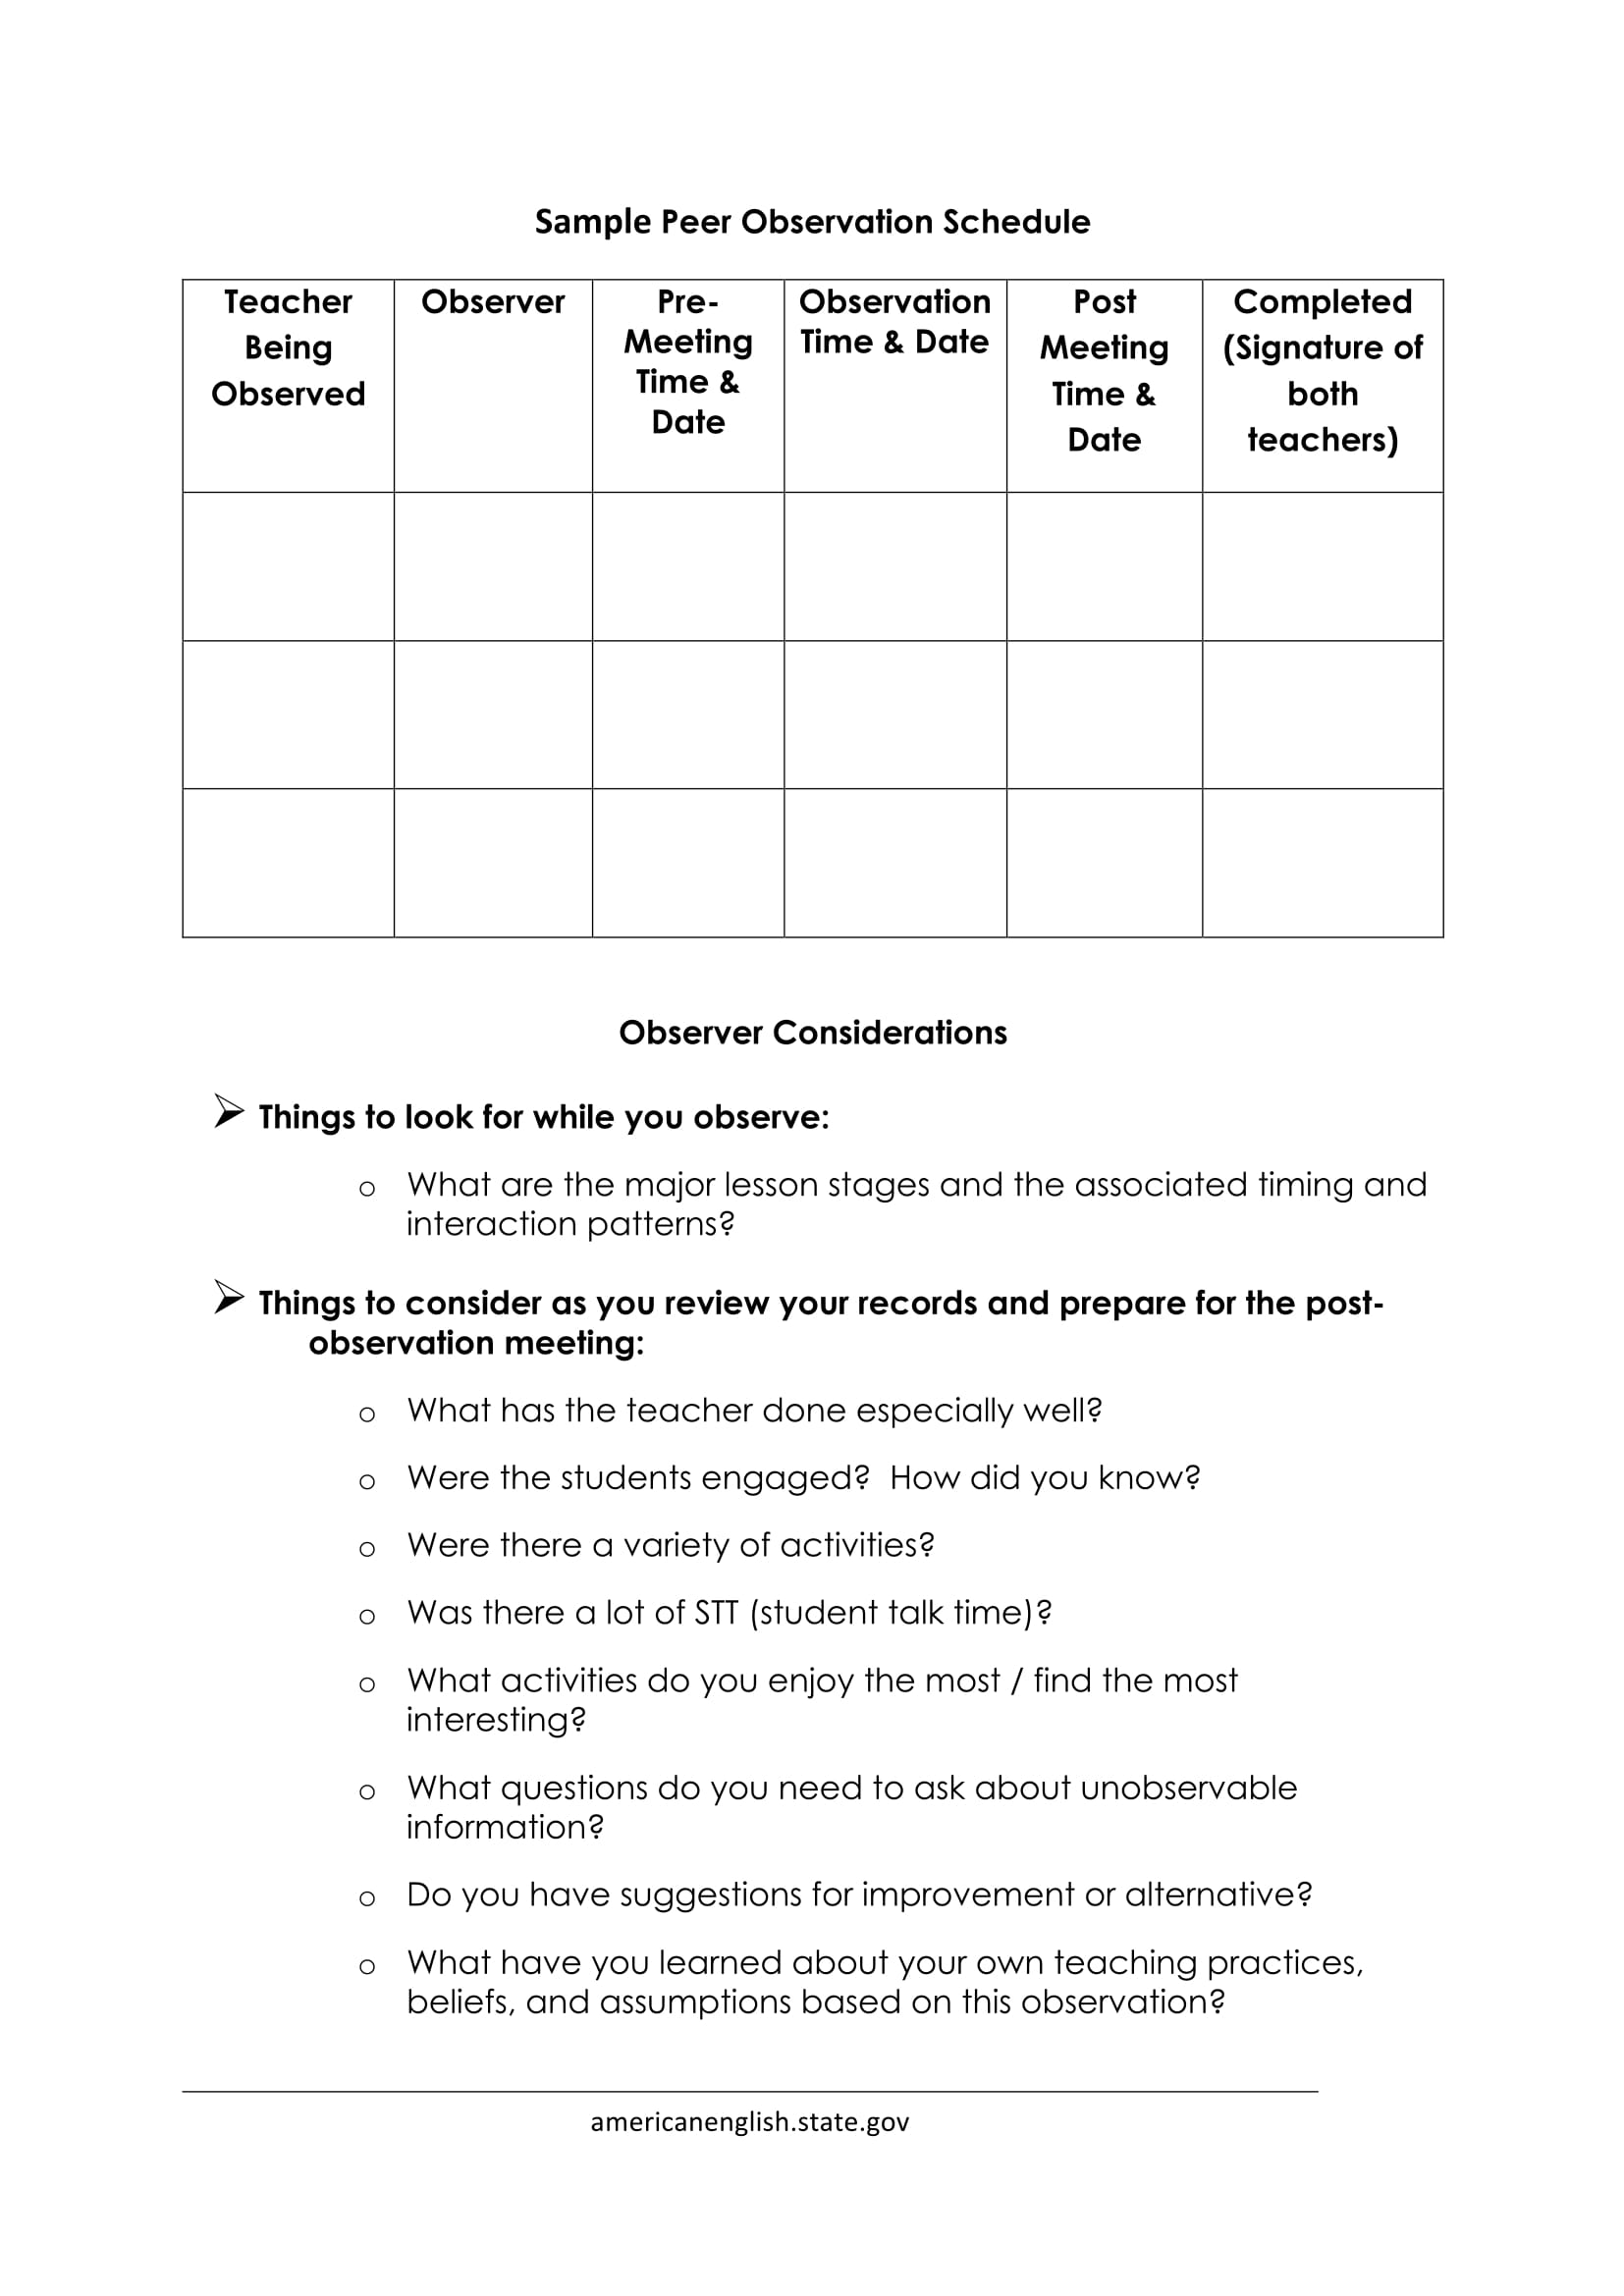 peer observation schedule form 2